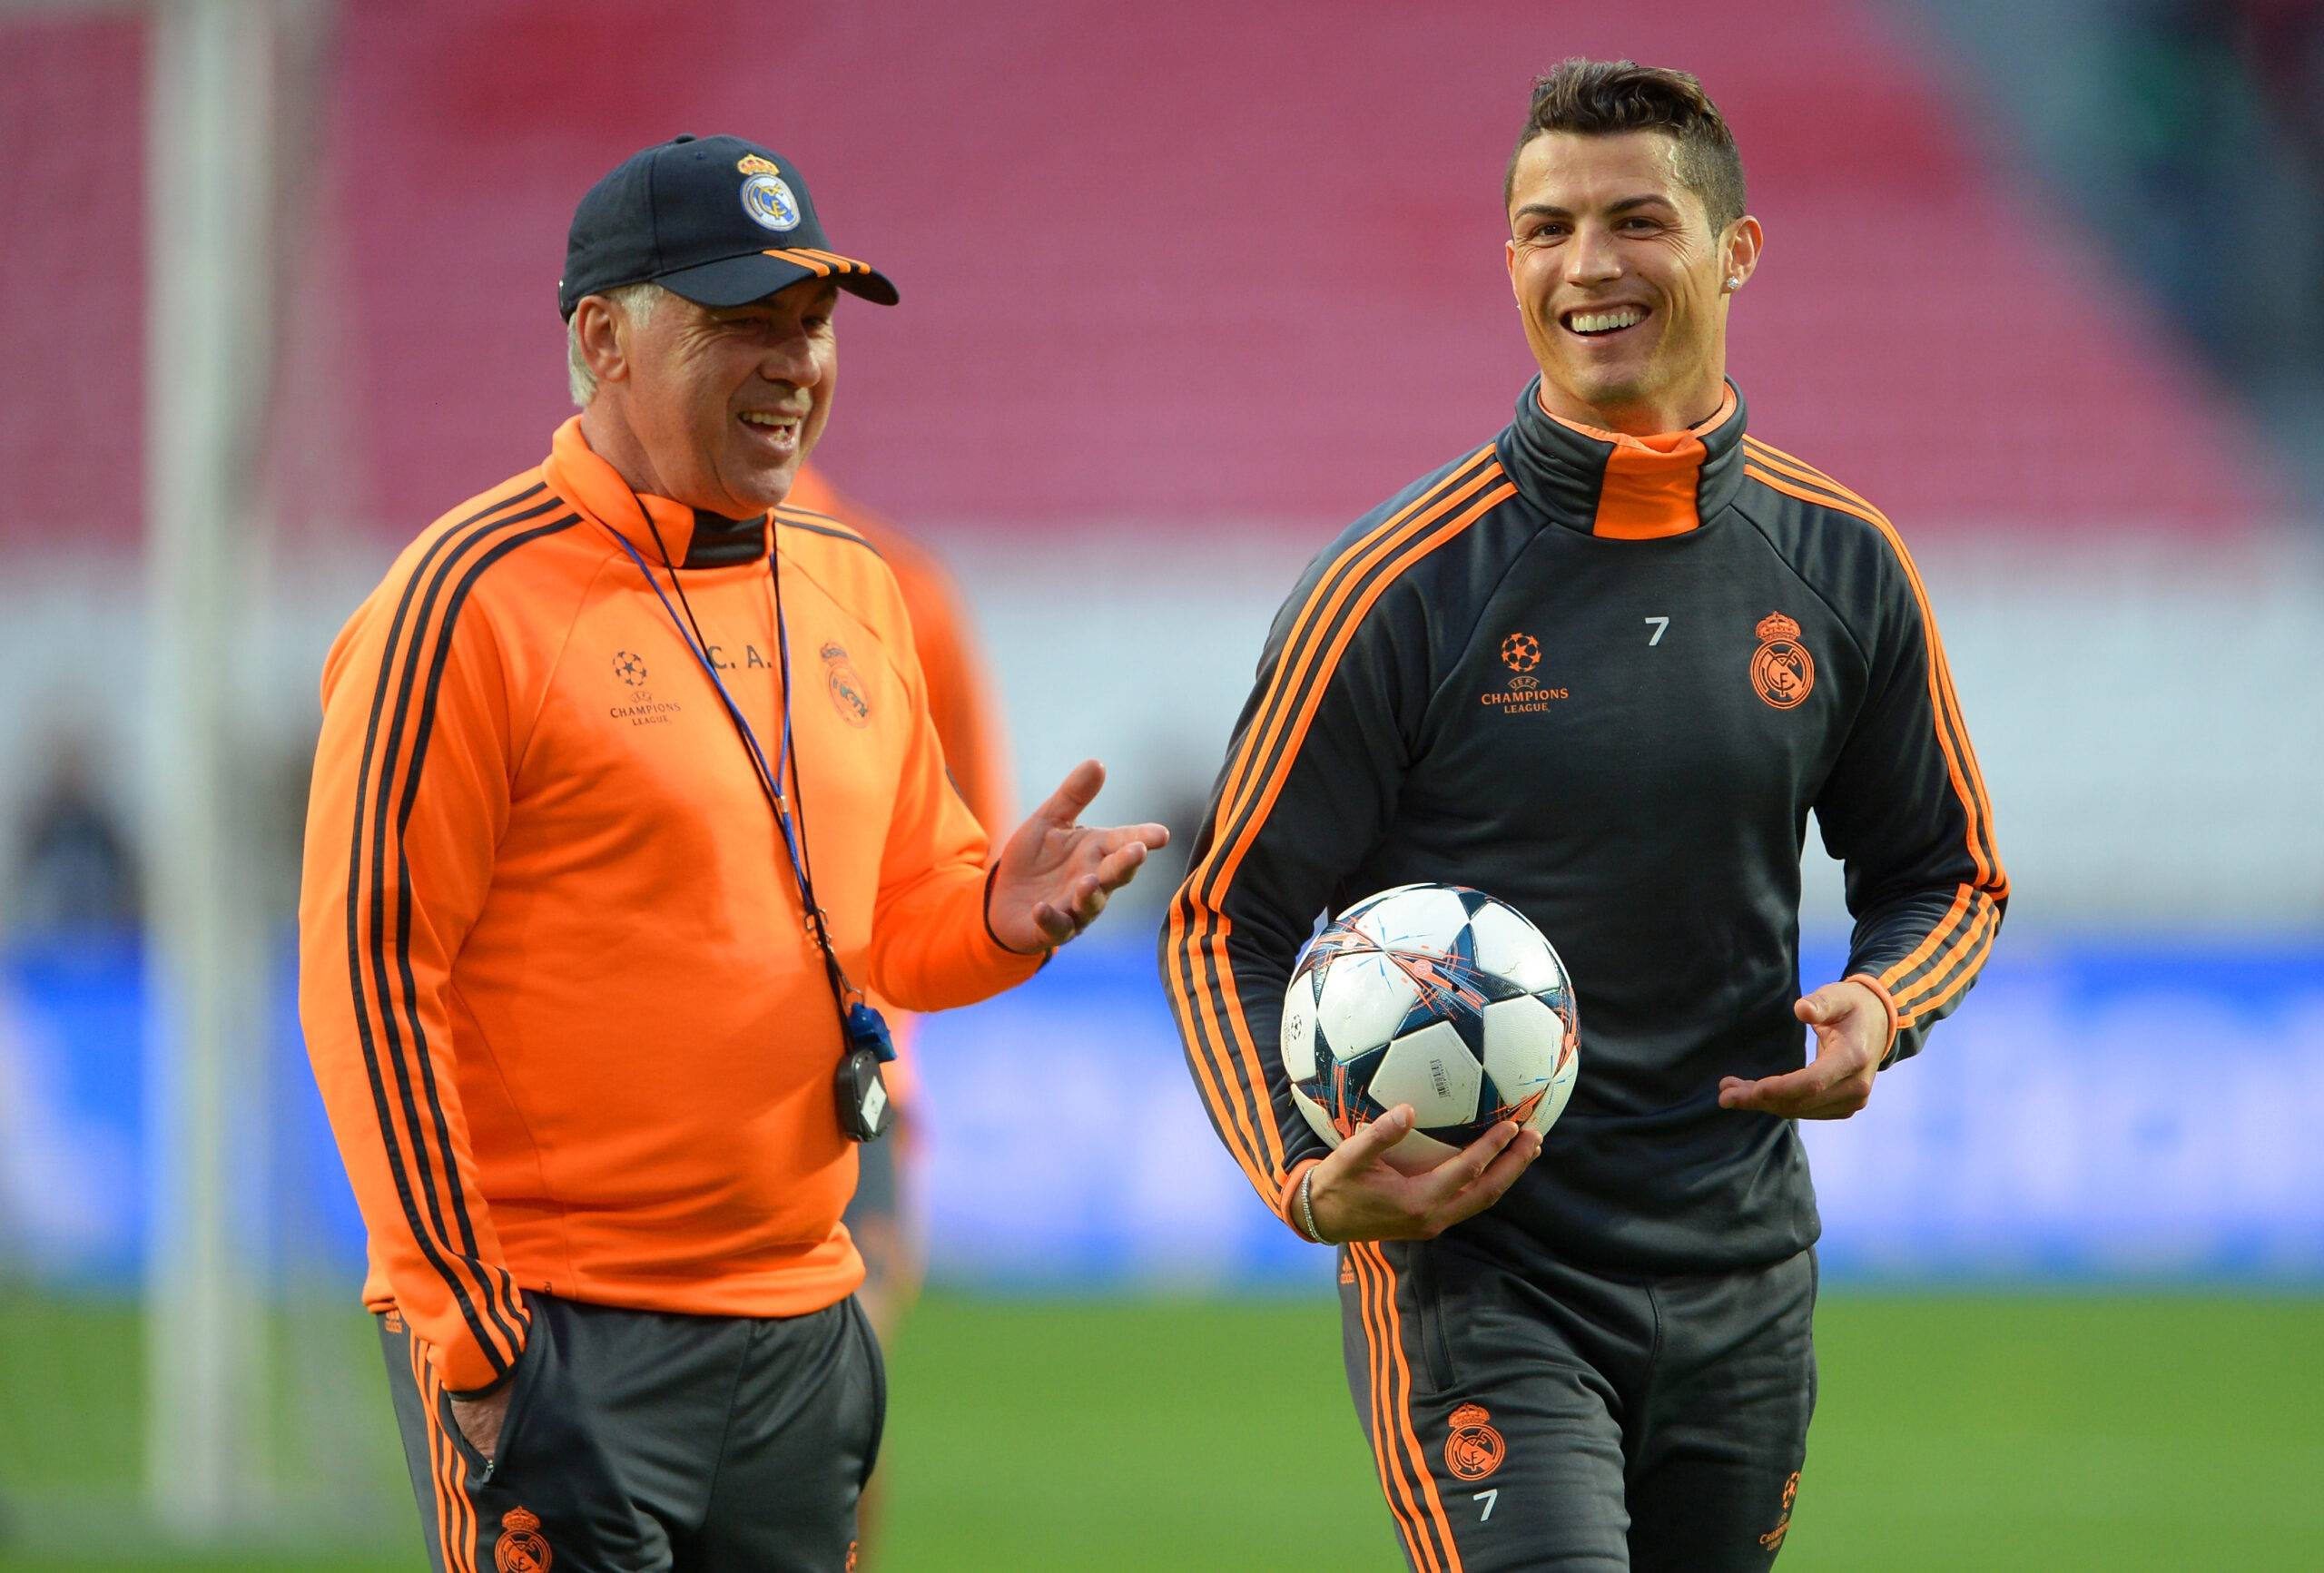 Carlo Ancelotti and Cristiano Ronaldo